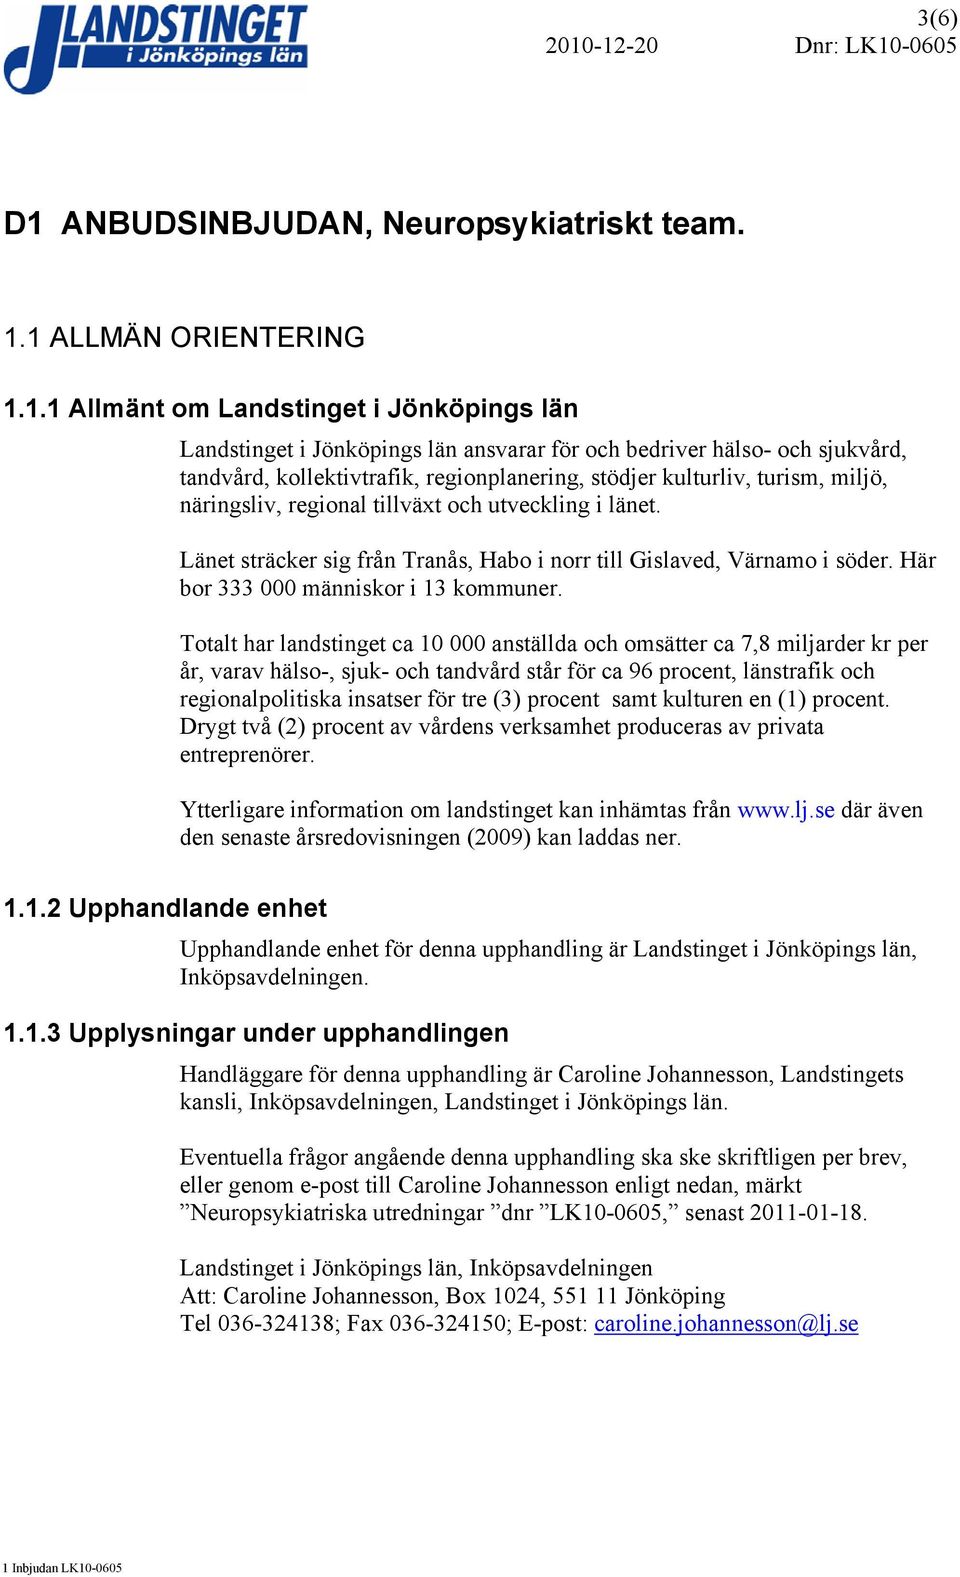 1 ALLMÄN ORIENTERING 1.1.1 Allmänt om Landstinget i Jönköpings län Landstinget i Jönköpings län ansvarar för och bedriver hälso- och sjukvård, tandvård, kollektivtrafik, regionplanering, stödjer